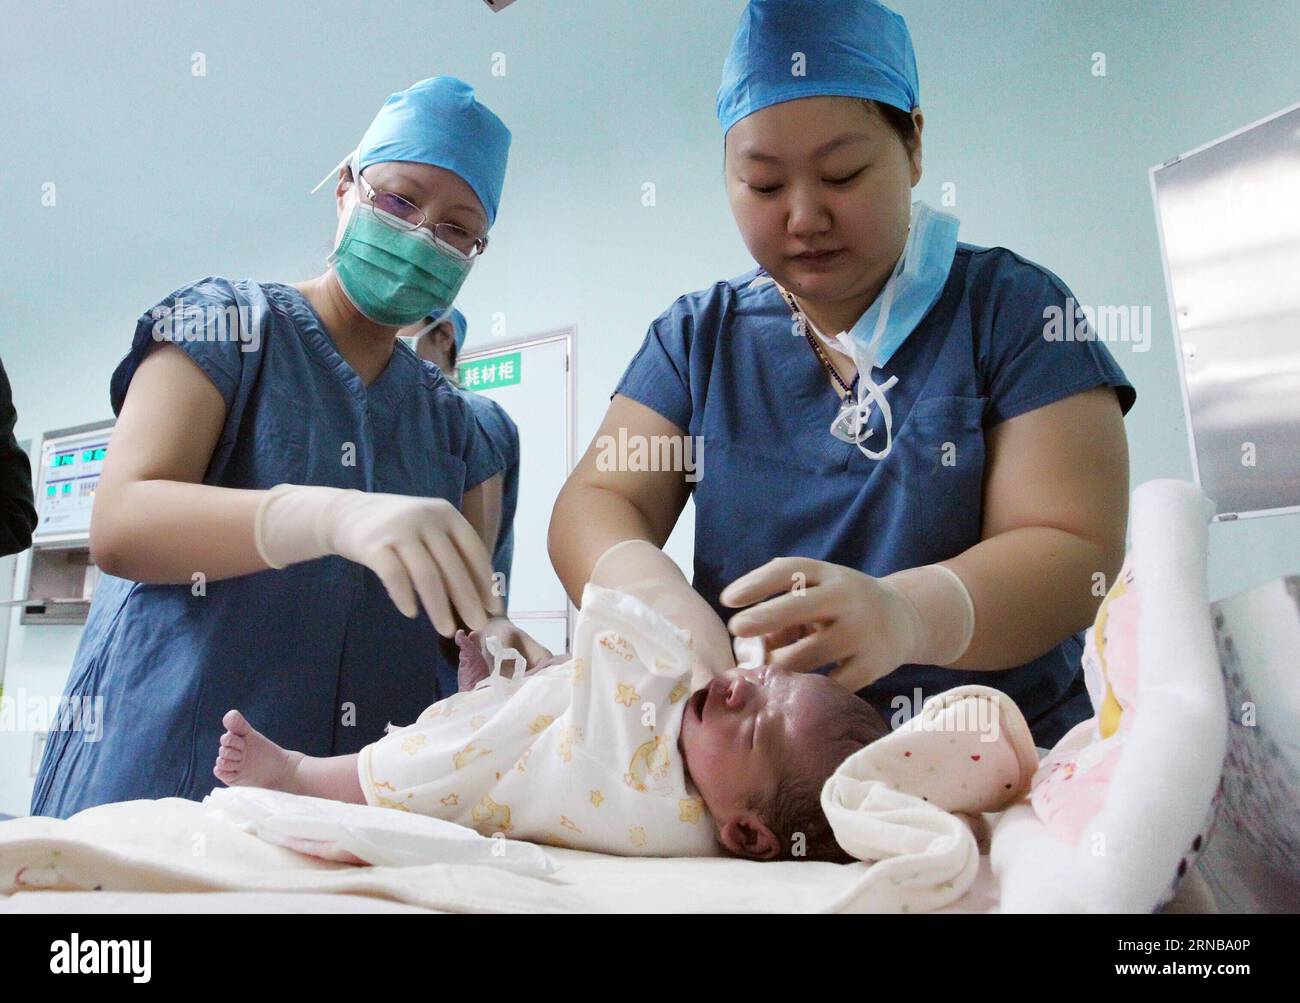 XI AN, 24. Februar 2016 -- Krankenschwestern kümmern sich um ein Neugeborenes im Tangdu Hospital in Xi an, Hauptstadt der nordwestchinesischen Provinz Shaanxi, 24. Februar 2016. Das Baby, das am Mittwoch in Xi an durch gefrorenen Embryo-Transfer (FET) geboren wurde, wurde vor über 12 Jahren gedüngt und wurde Chinas längstes konserviertes Röhrenbaby durch FET-Technologie. ) (Cxy) CHINA-XI AN-FROZEN EMBRYO-RECORD (CN) LiuxTingting PUBLICATIONxNOTxINxCHN Xi bis 24. Februar 2016 Krankenschwestern kümmern sich um ein Neugeborenes IM Tangdu Hospital in Xi in der Hauptstadt Nordwestchinas, Provinz S Shaanxi, 24. Februar 2016 das Baby, das AM Mittwoch in Xi in Thr geboren wurde Stockfoto